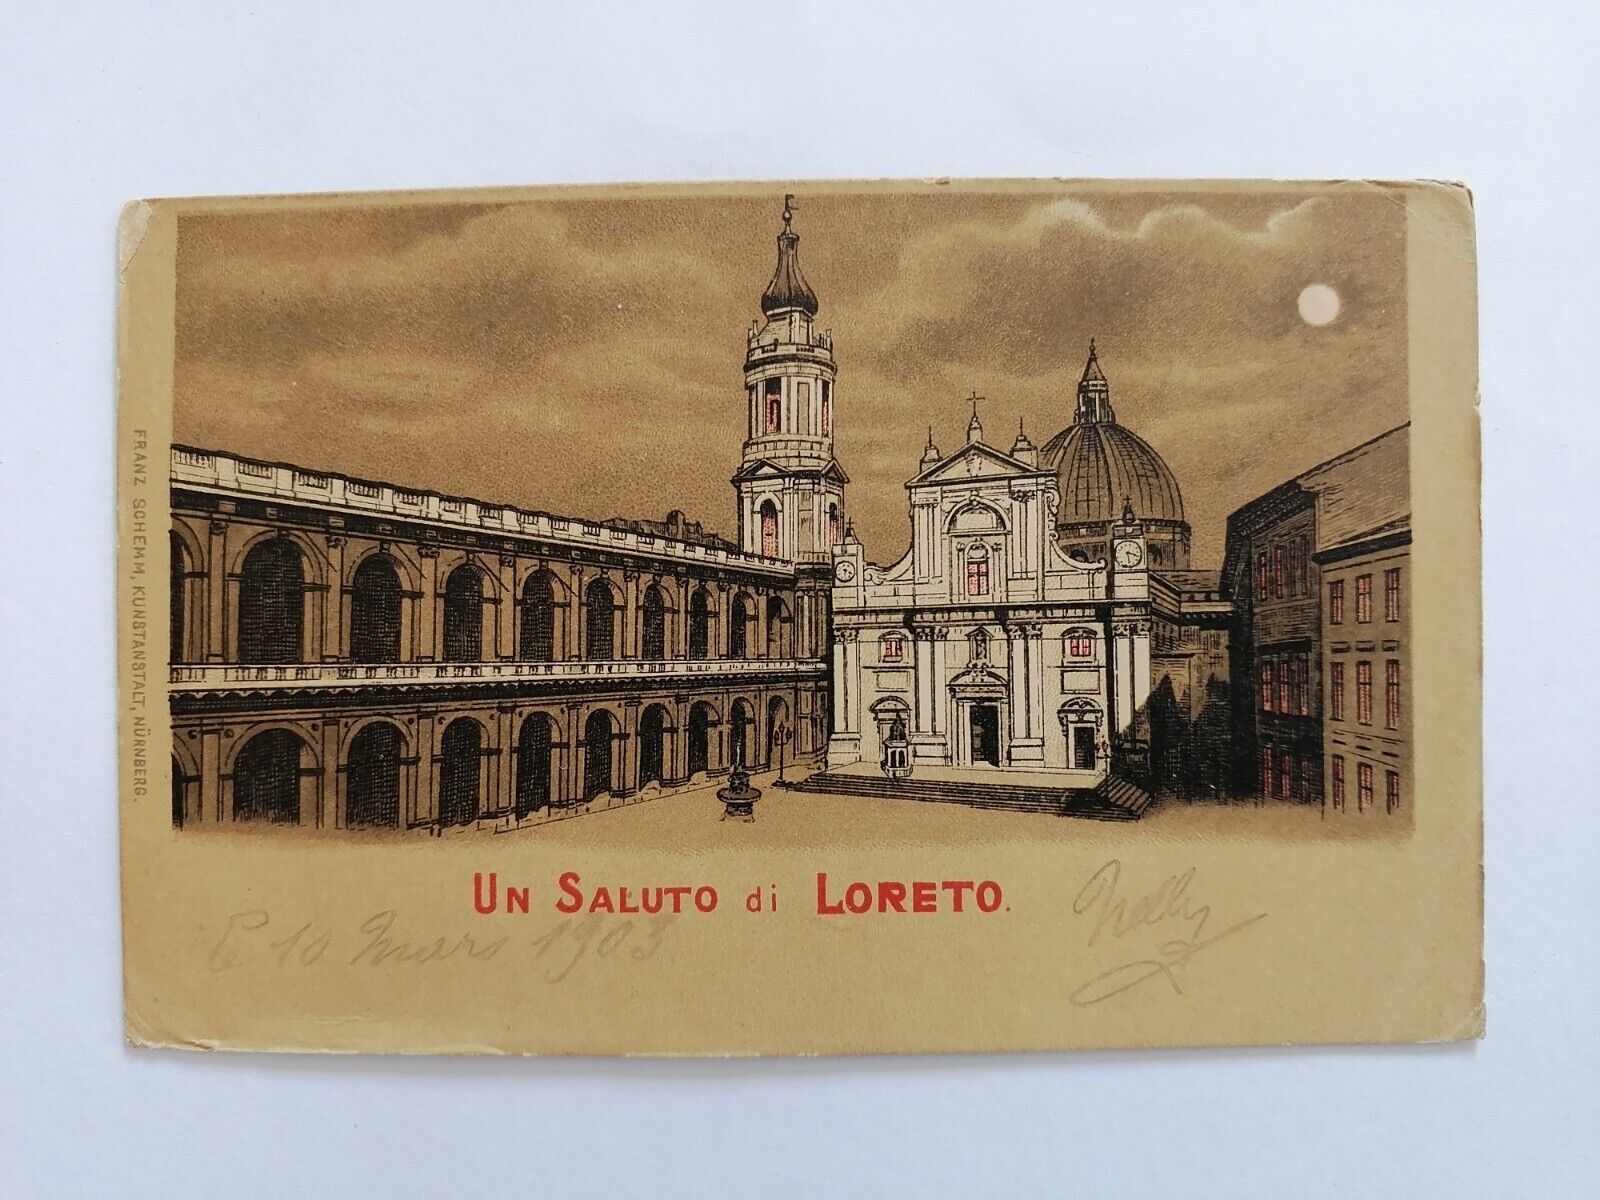 Litho Postcard ITALY UN SALUTO DI LORETO Cachet HOTEL DELLA PACE E. Gemini